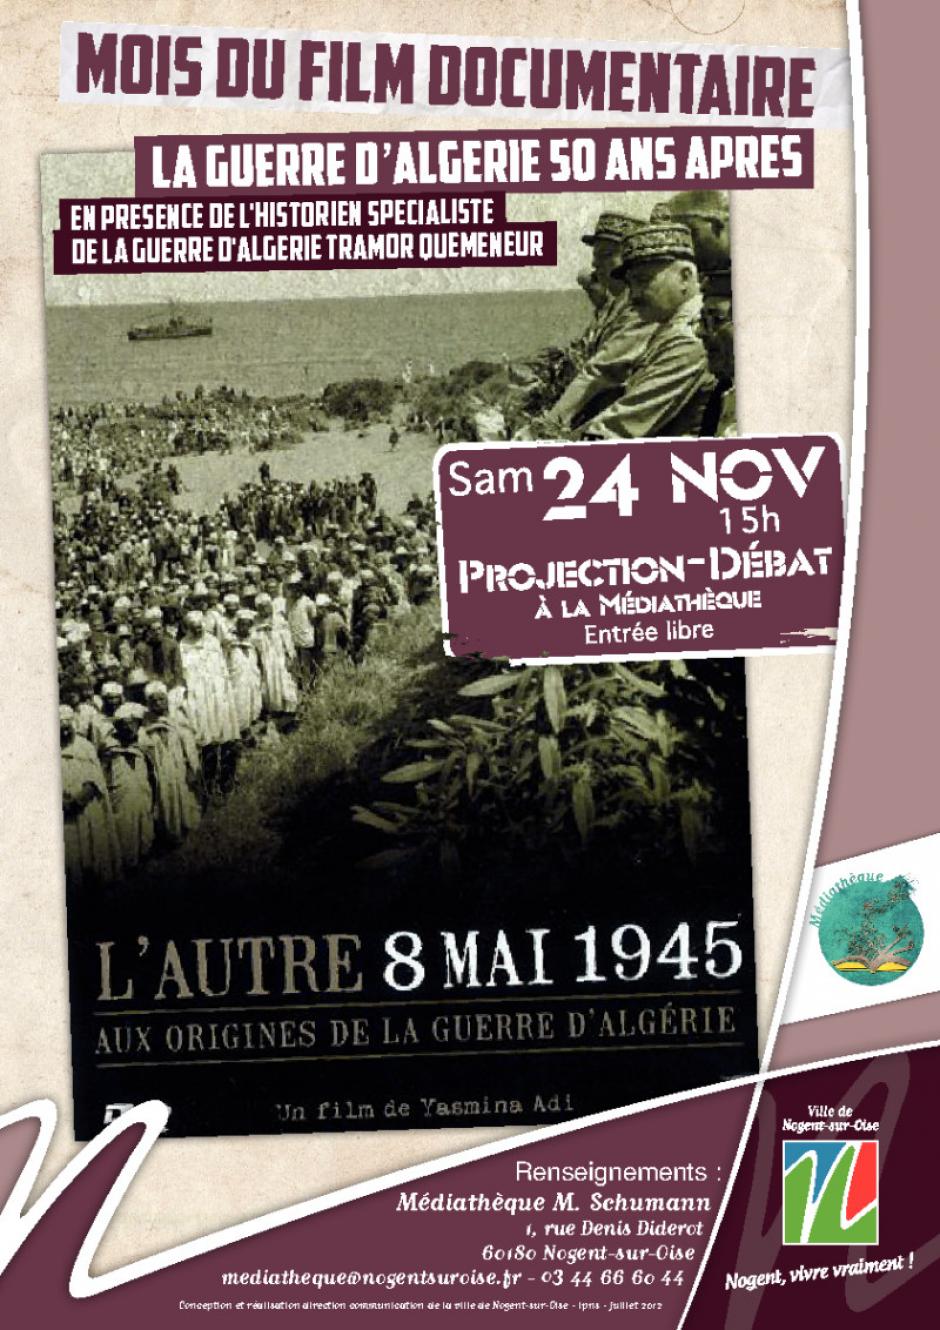 24 novembre, Nogent-sur-Oise - Mois du film documentaire-Projection-débat « L'autre 8 mai 1945 »